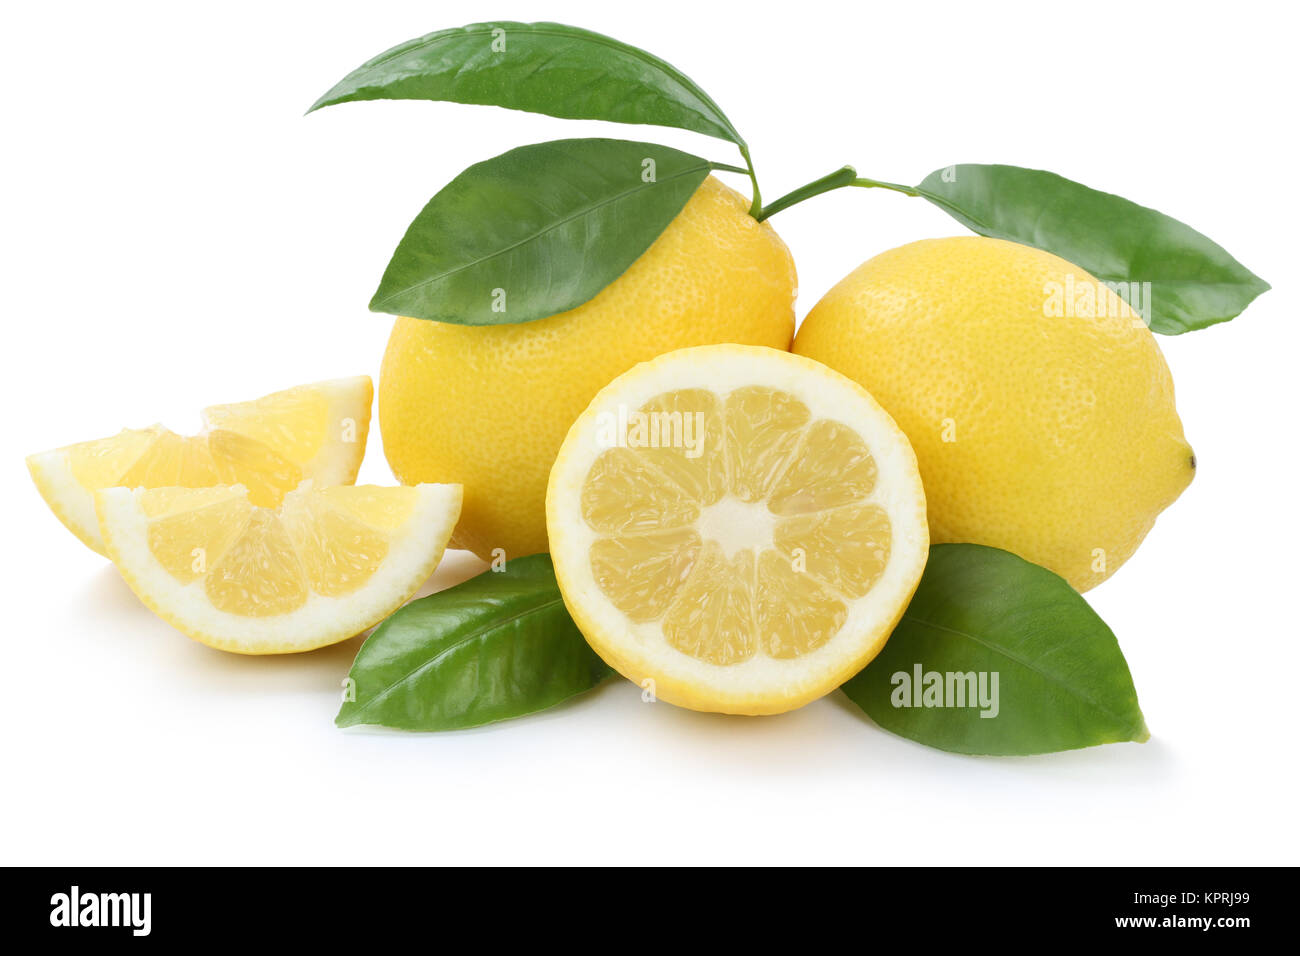 Zitrone Zitronen bio geschnitten Früchte Freisteller freigestellt isoliert  vor einem weissen Hintergrund Stock Photo - Alamy